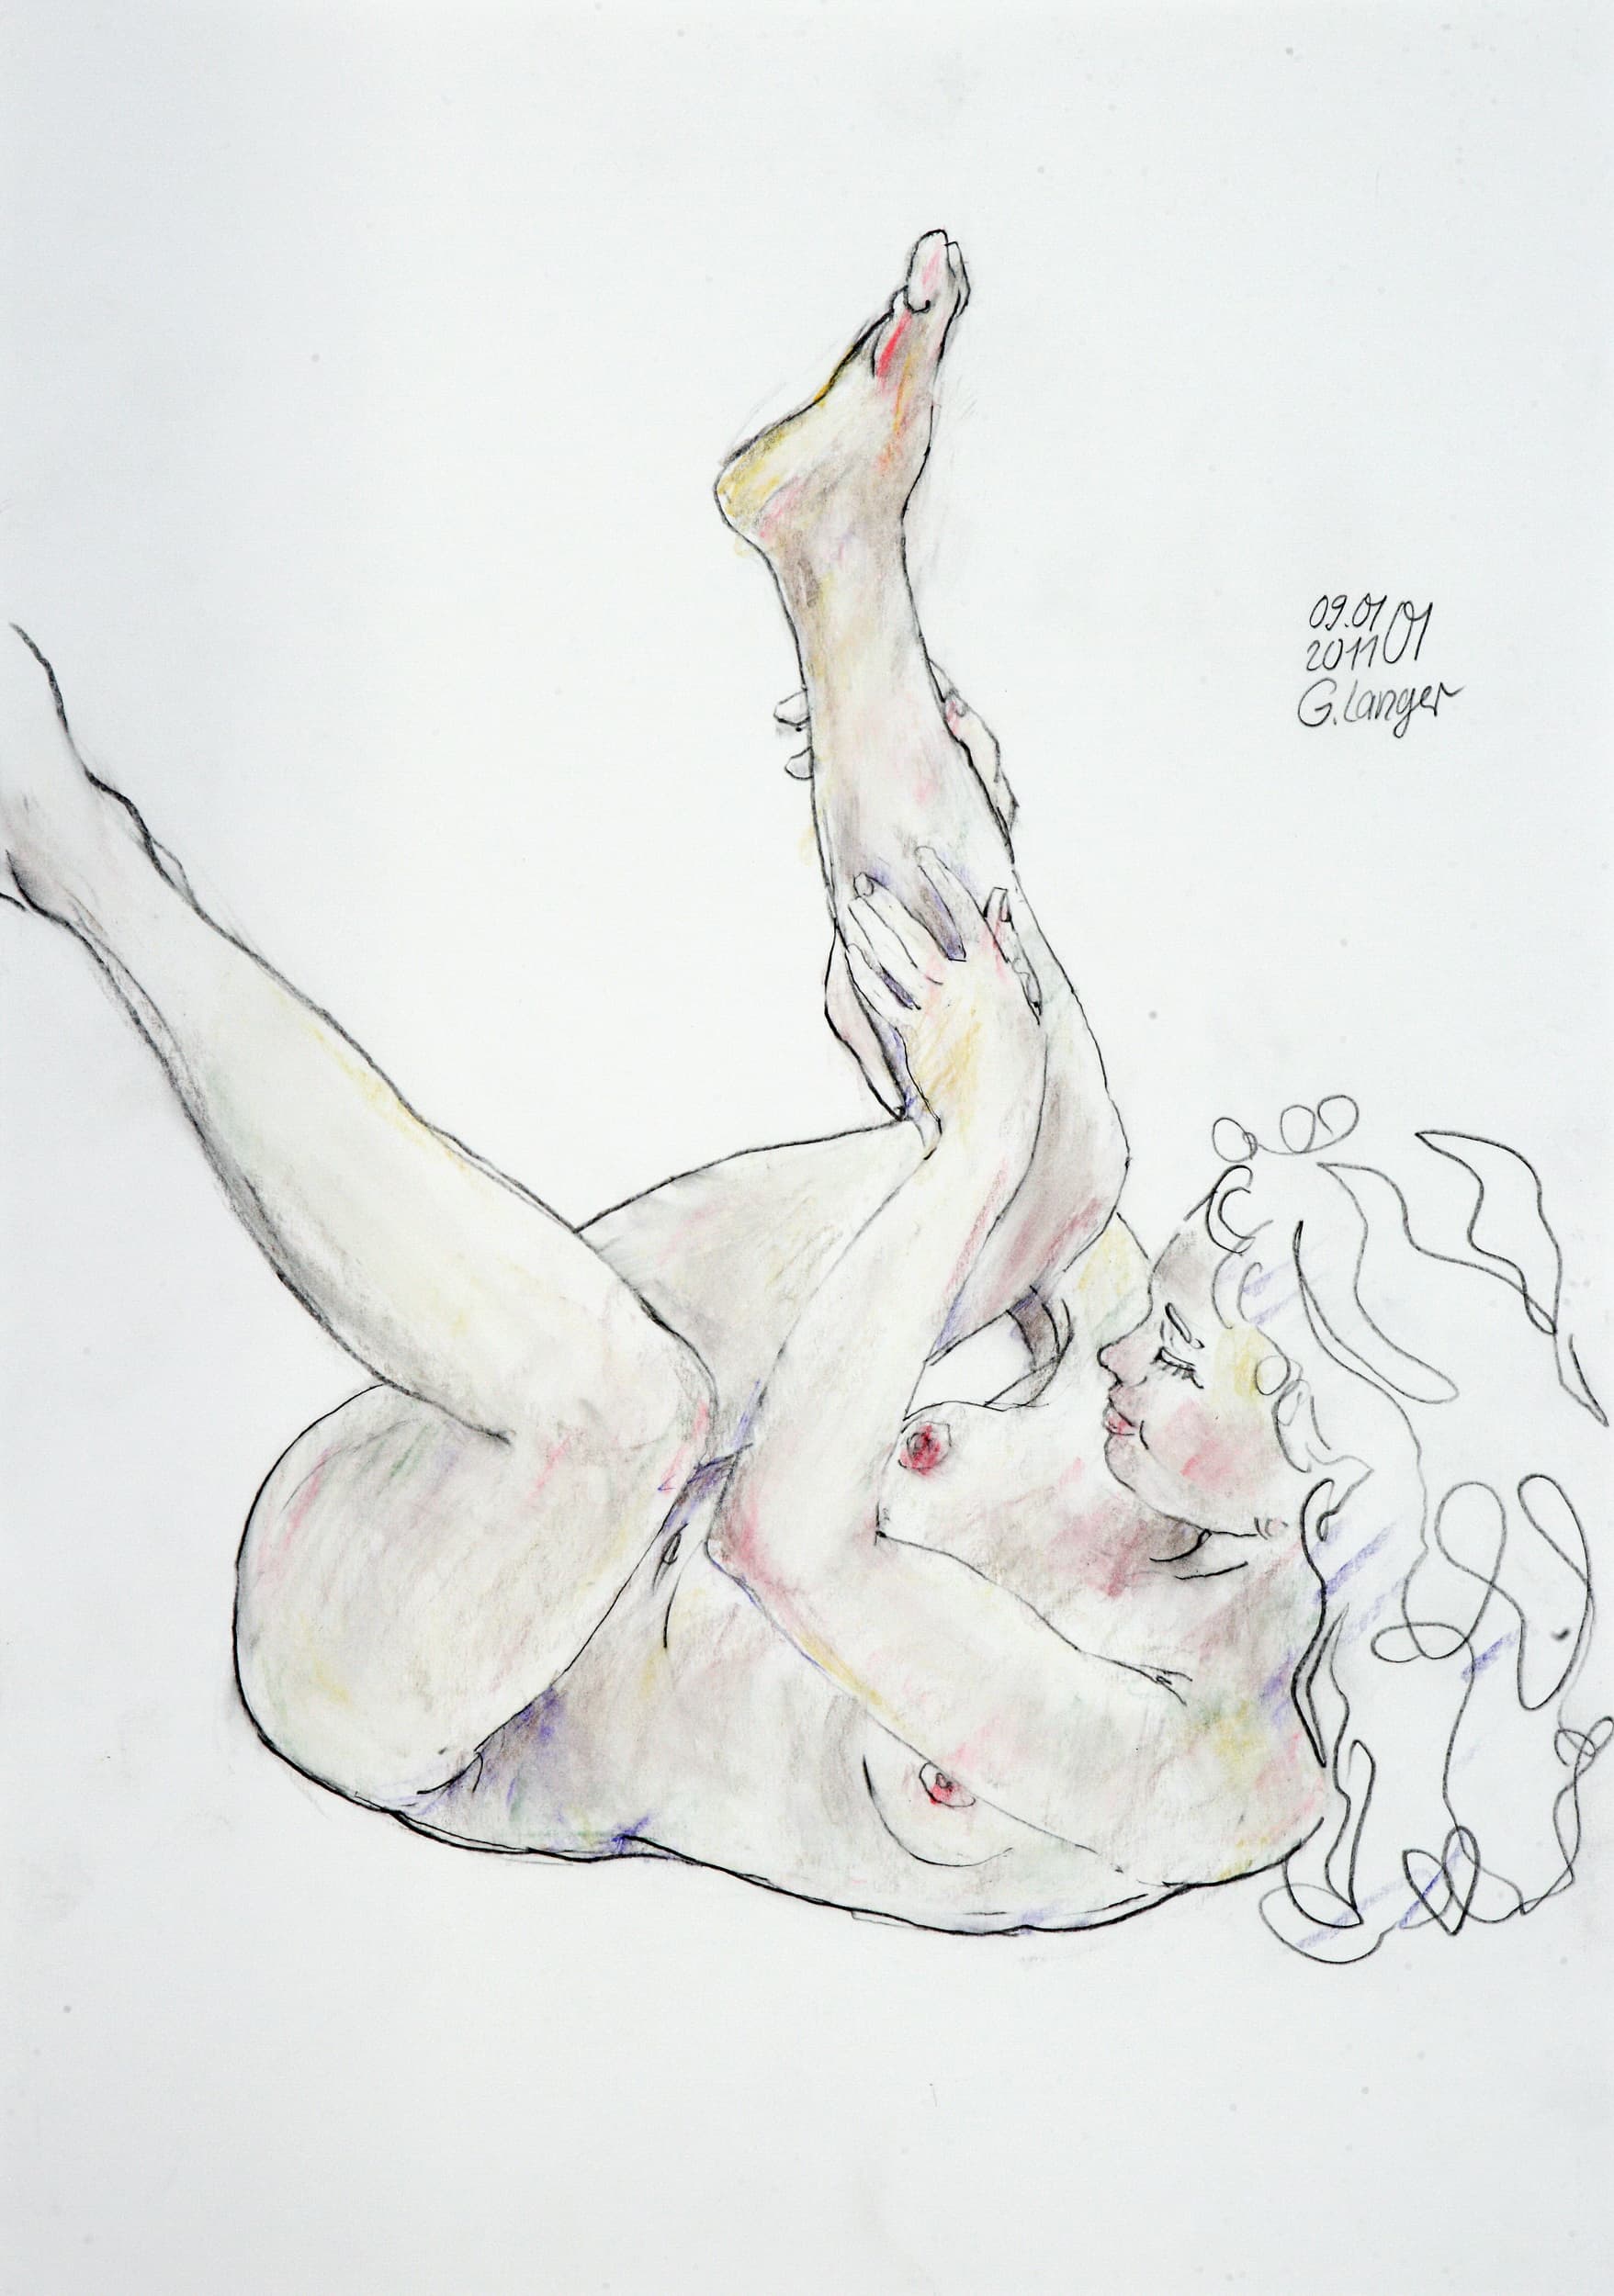 Gunter Langer, liegender weiblicher Akt, 2011, Gouache Wasserfarbe Bleistift, Karton, 59 x 42 cm